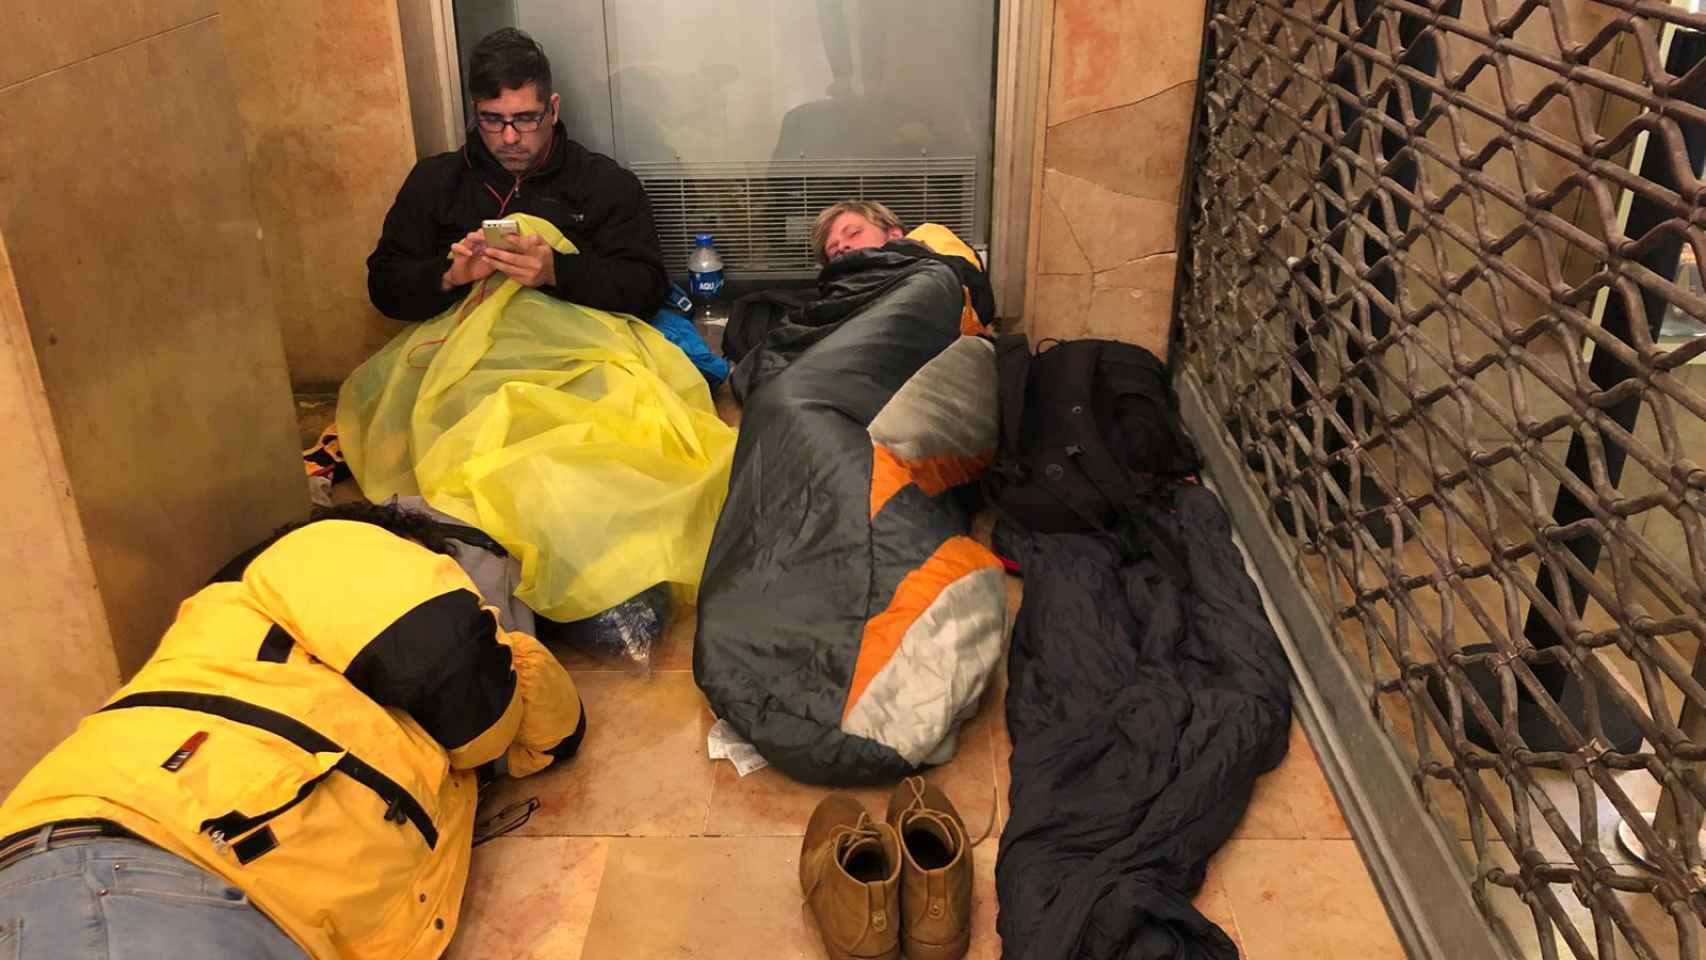 Los 'sin techo' duermen en el soportal de un cine en Cannes.